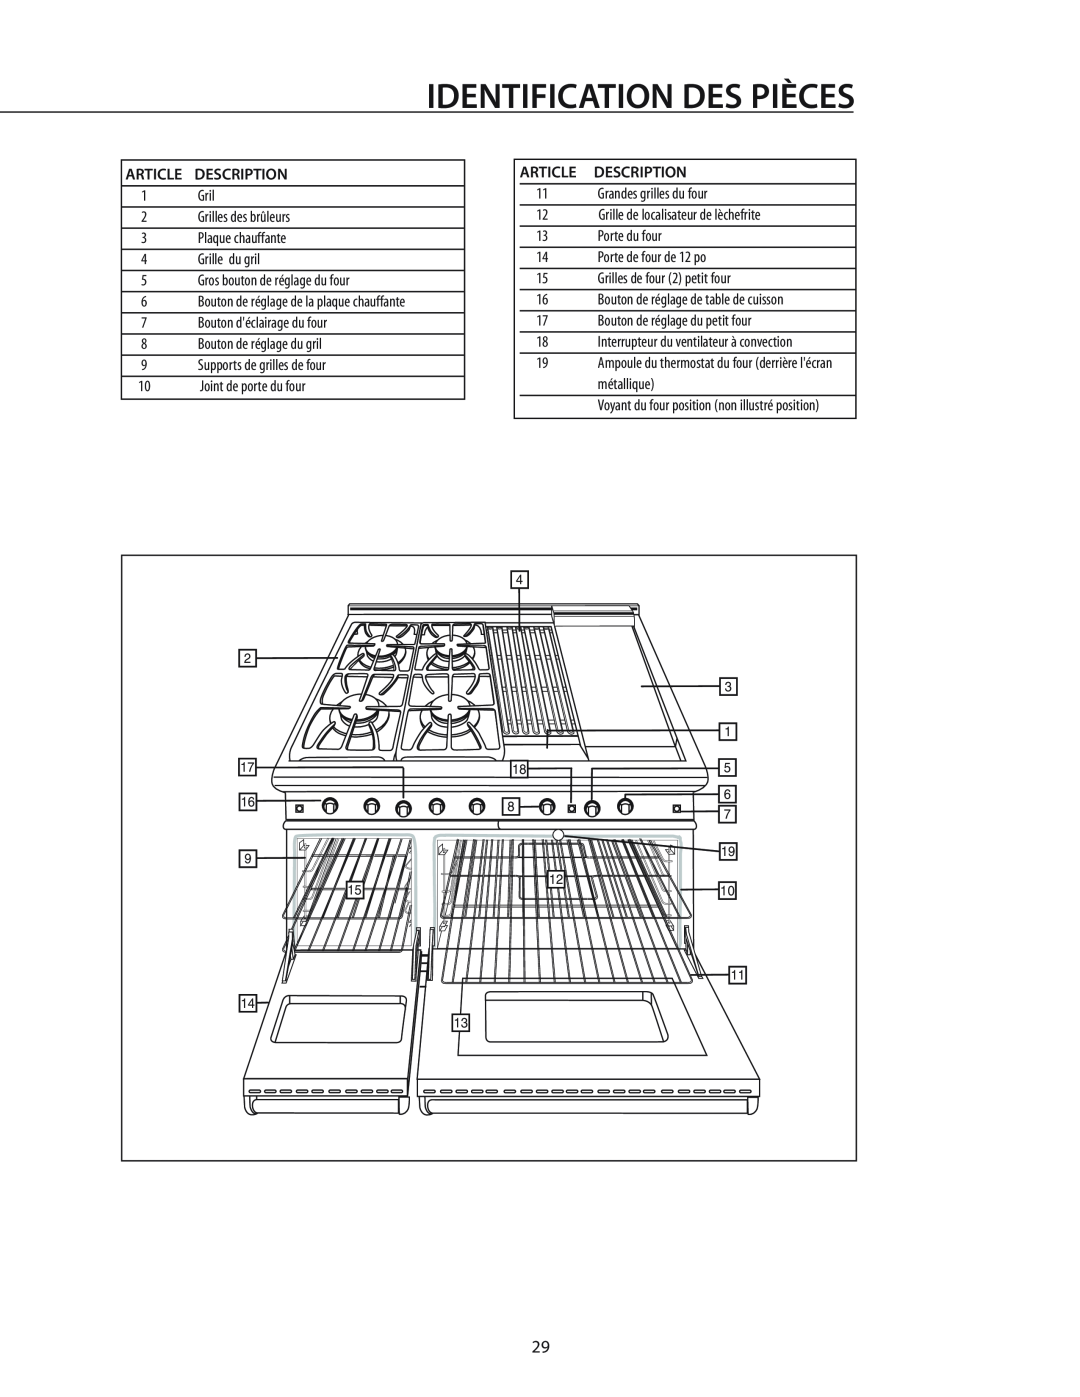 DCS RGS-486GL Identification Des Pièces, Bouton de réglage de table de cuisson, Interrupteur du ventilateur à convection 